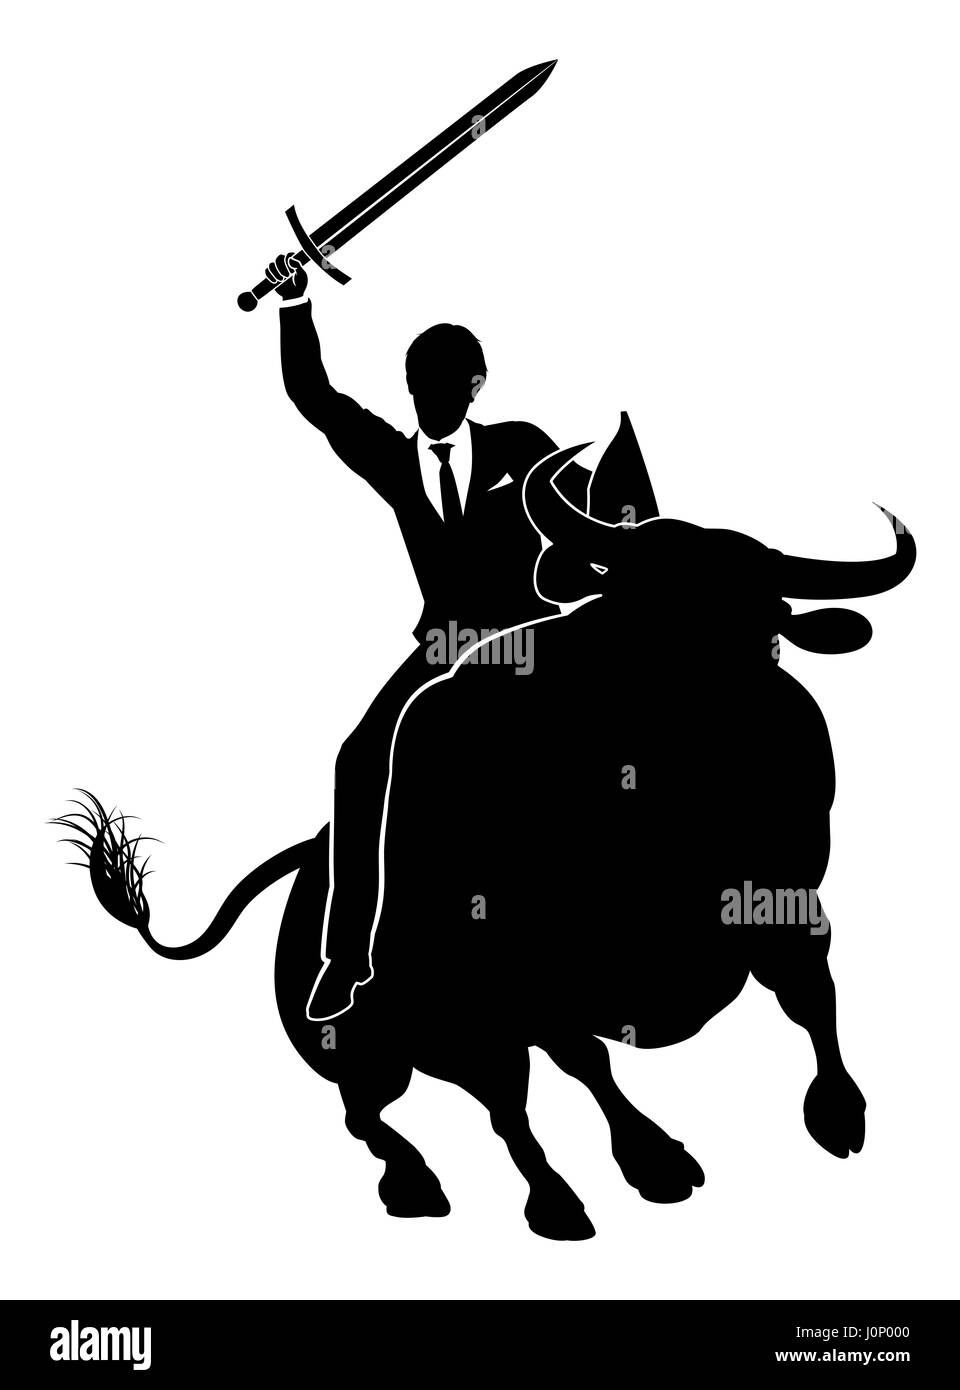 Eine finanzielle oder Aktienmarkt konzeptionelle Darstellung der Business Mann Ritter hält ein Schwert und Schild und einen Stier reiten Stockfoto